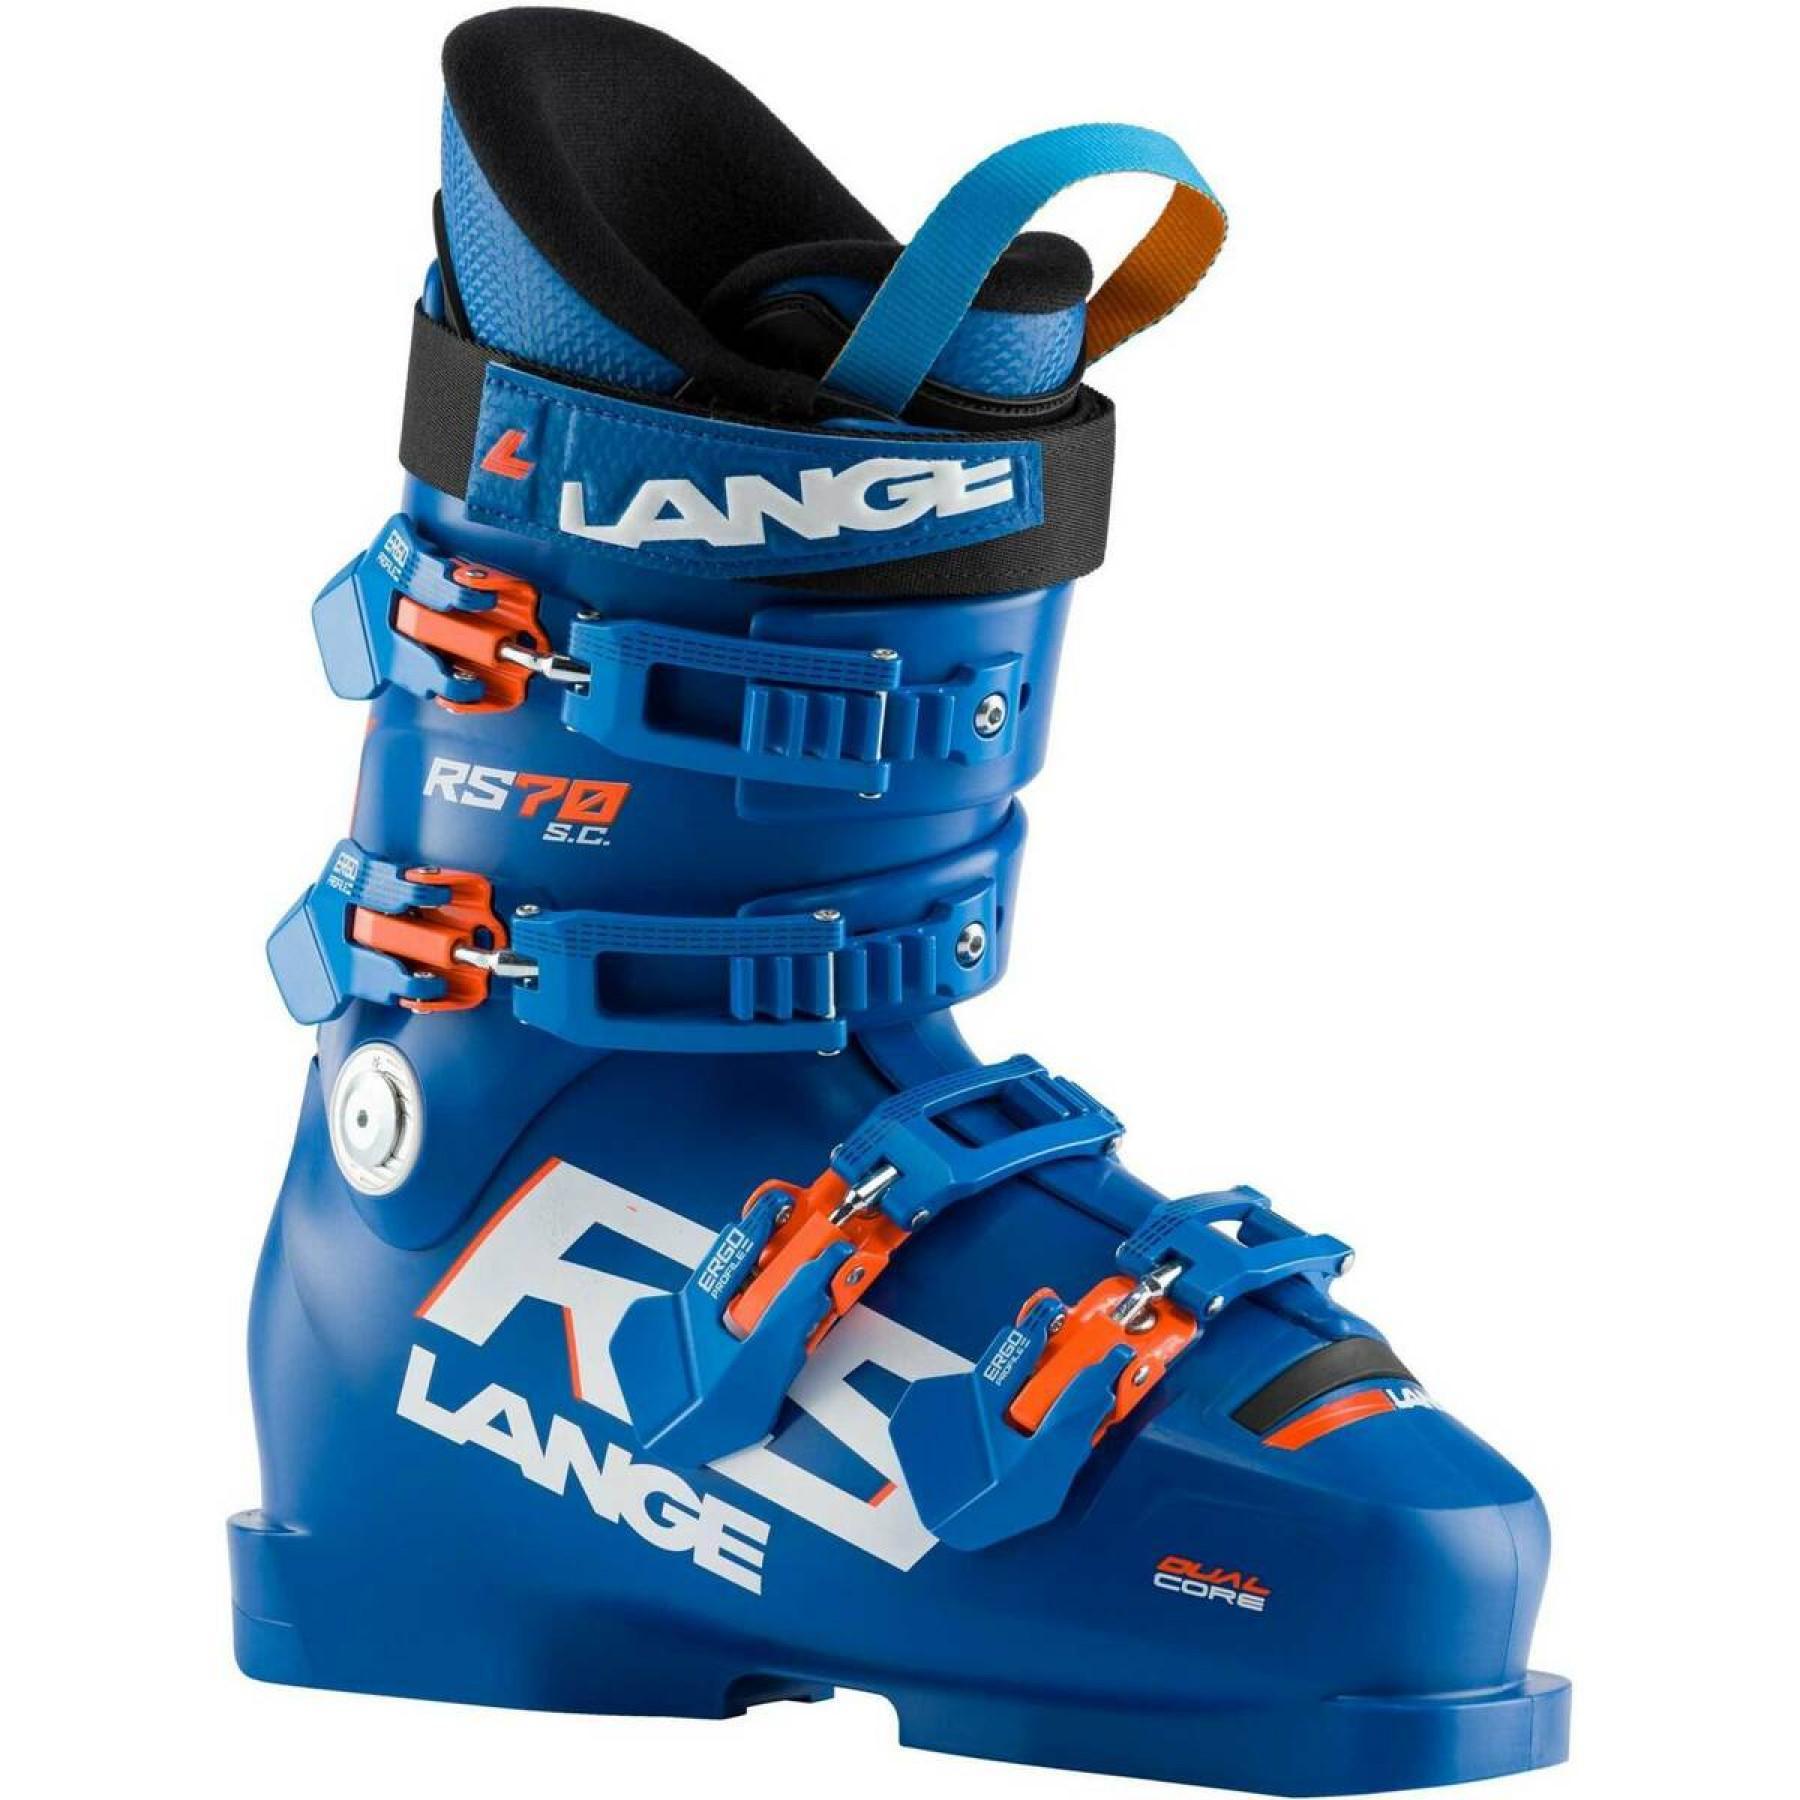 Dziecięce buty narciarskie Lange rs 70 s.c.